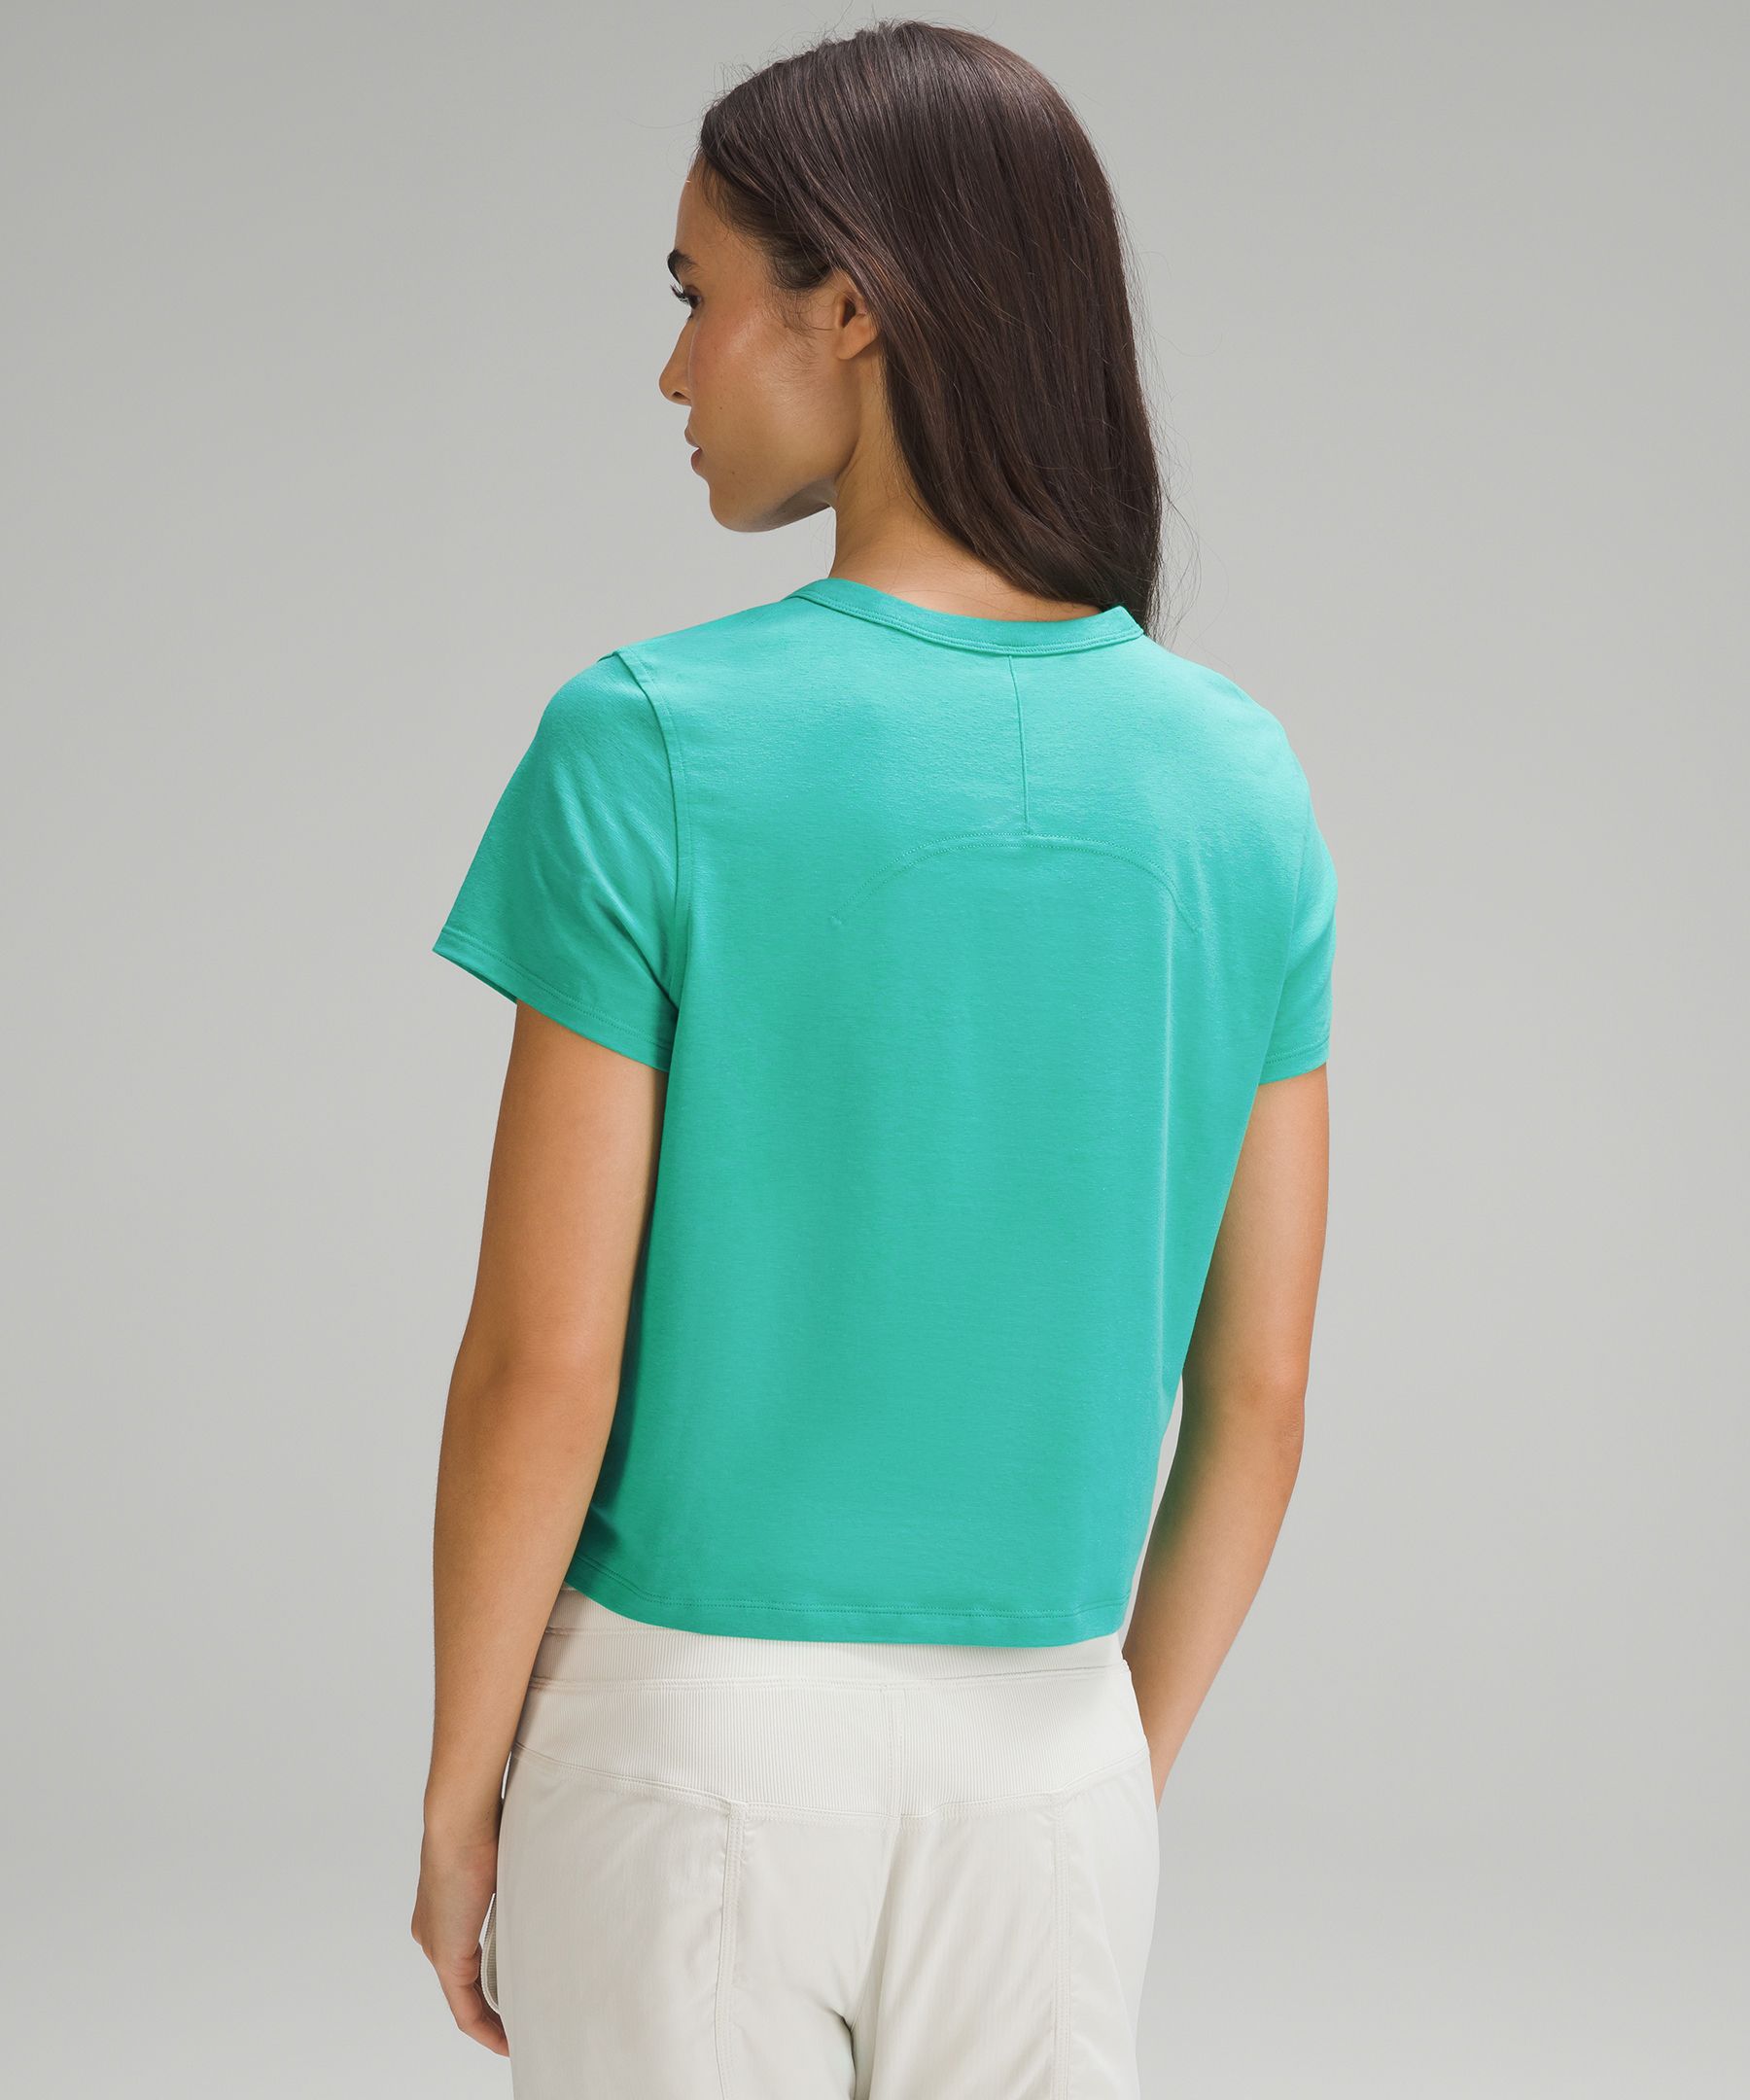 Lululemon Classic-Fit Cotton-Blend T-Shirt. 3